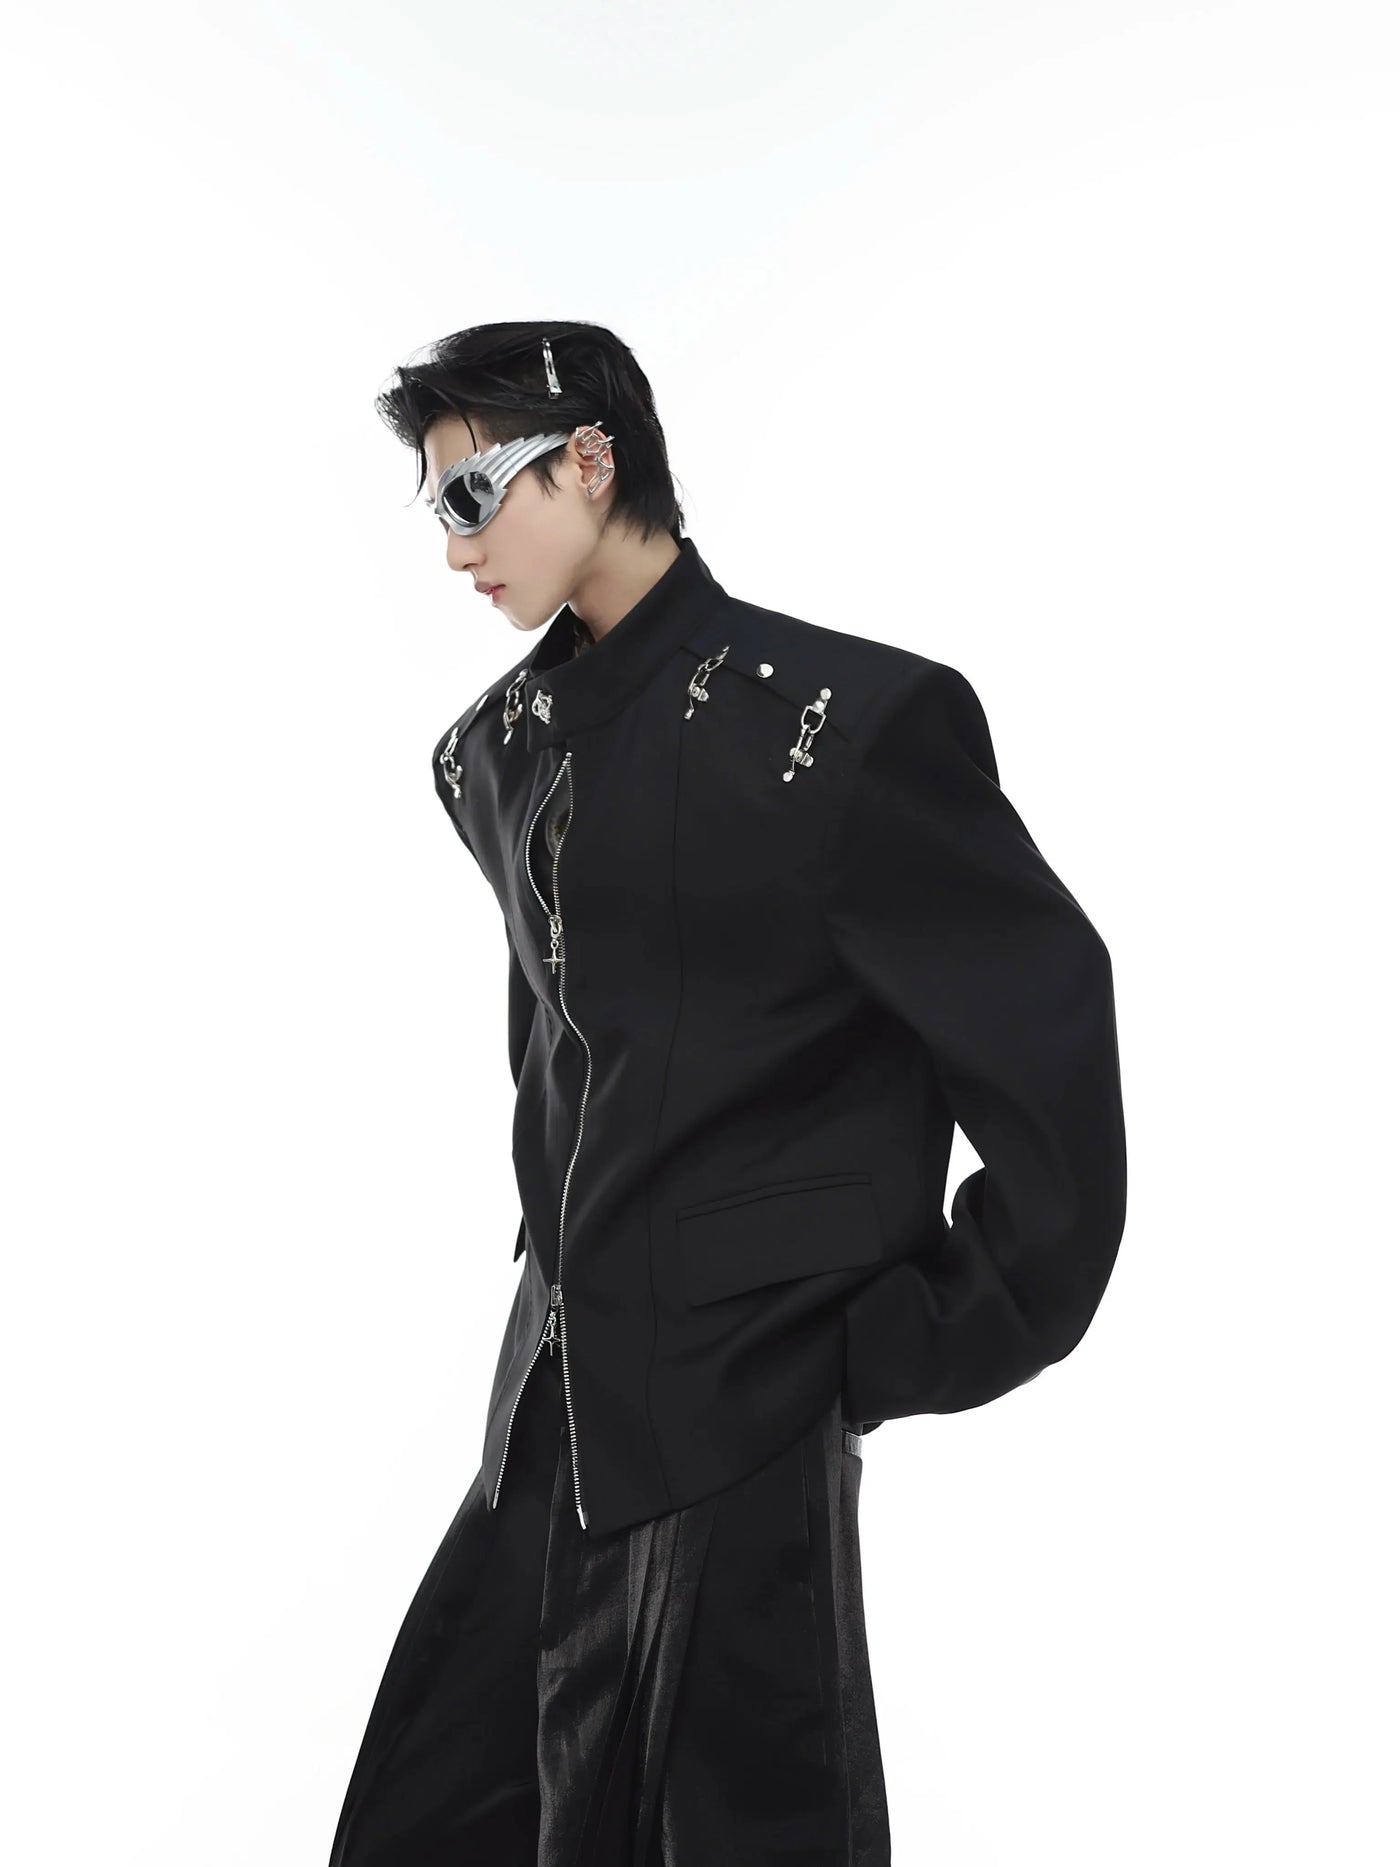 Shoulder Metal Link Zipped Jacket Korean Street Fashion Jacket By Argue Culture Shop Online at OH Vault